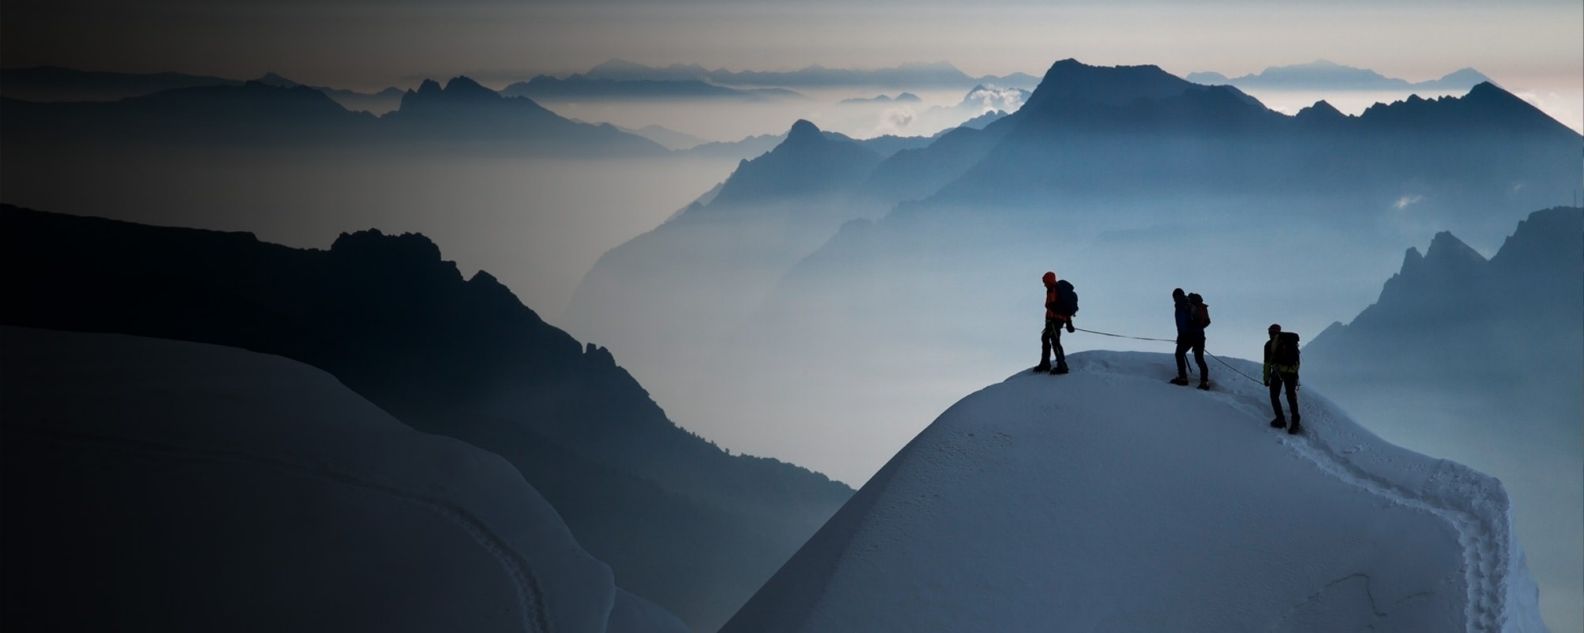 três alpinistas em pé no pico de uma montanha coberta de neve 